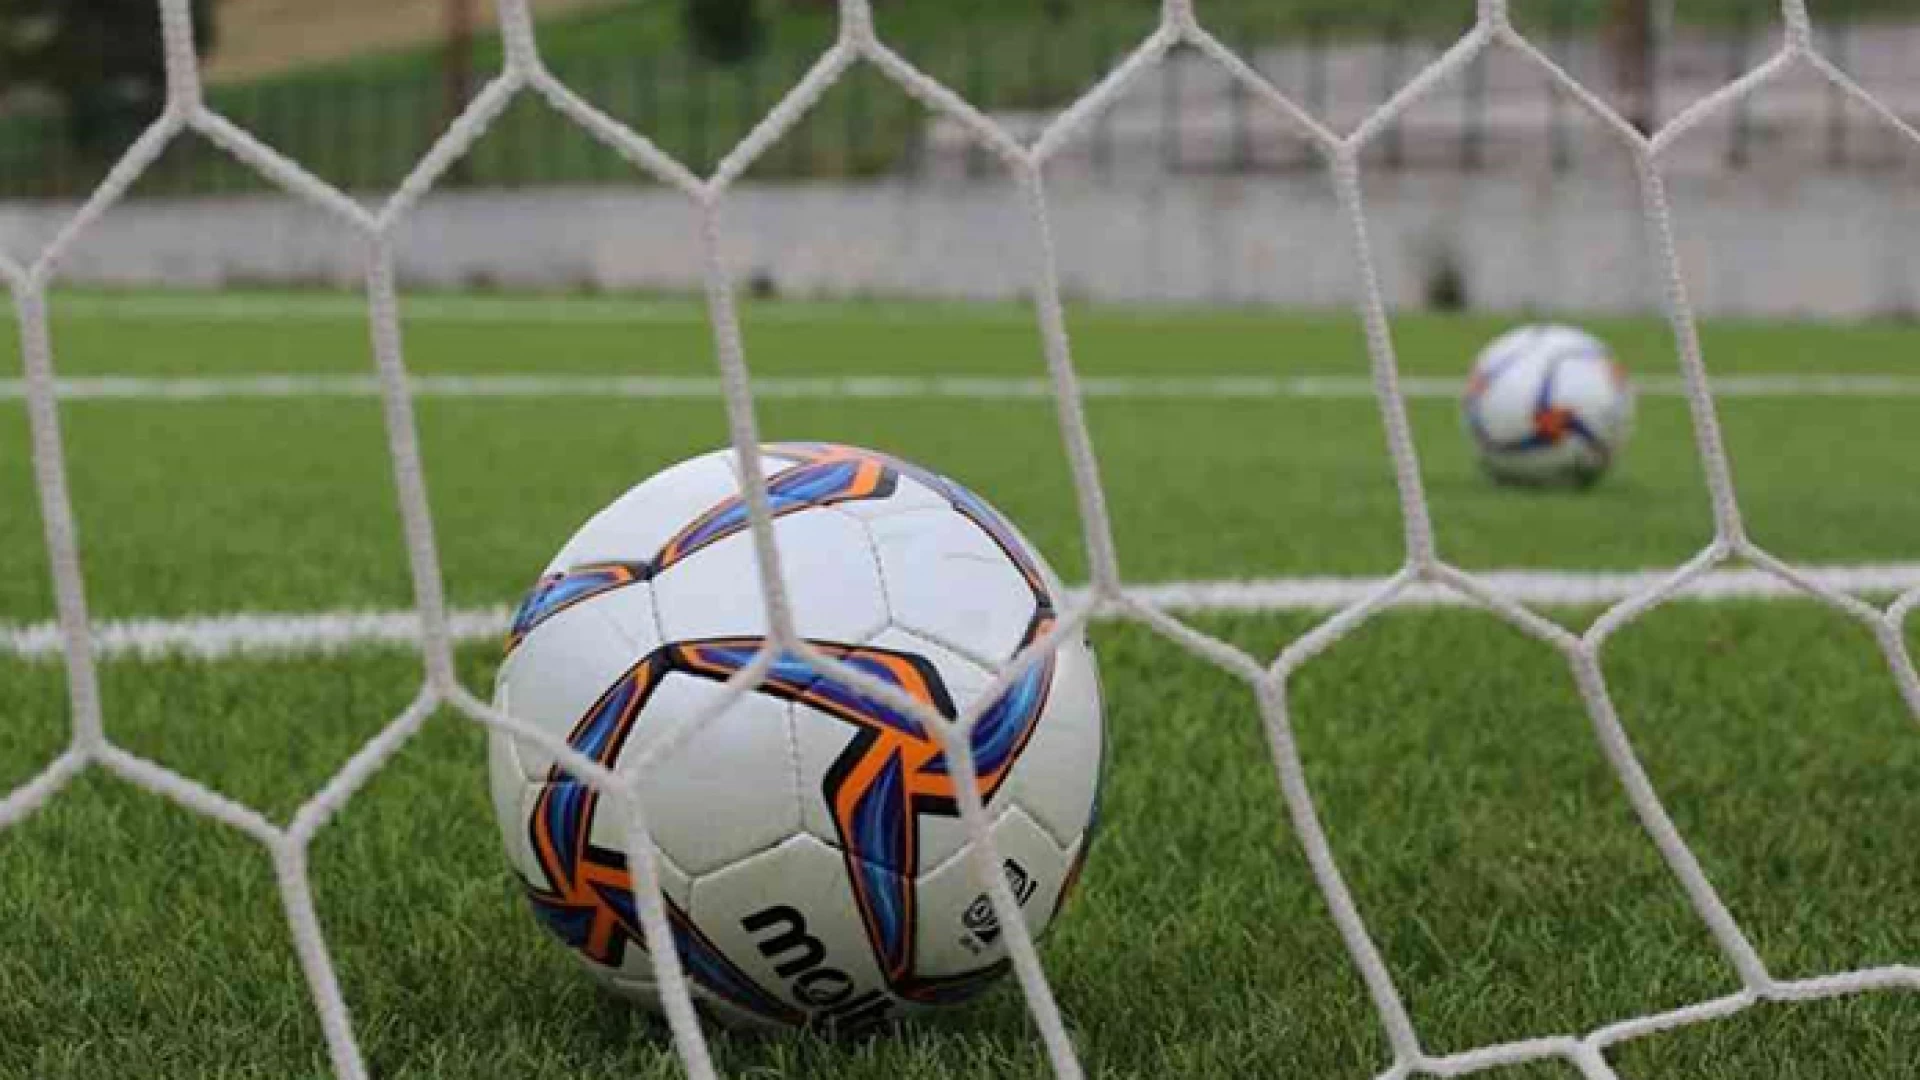 Lega Pro Girone C, Serie D girone F, Eccellenza e Promozione Molise: le gare in programma nel fine settimana